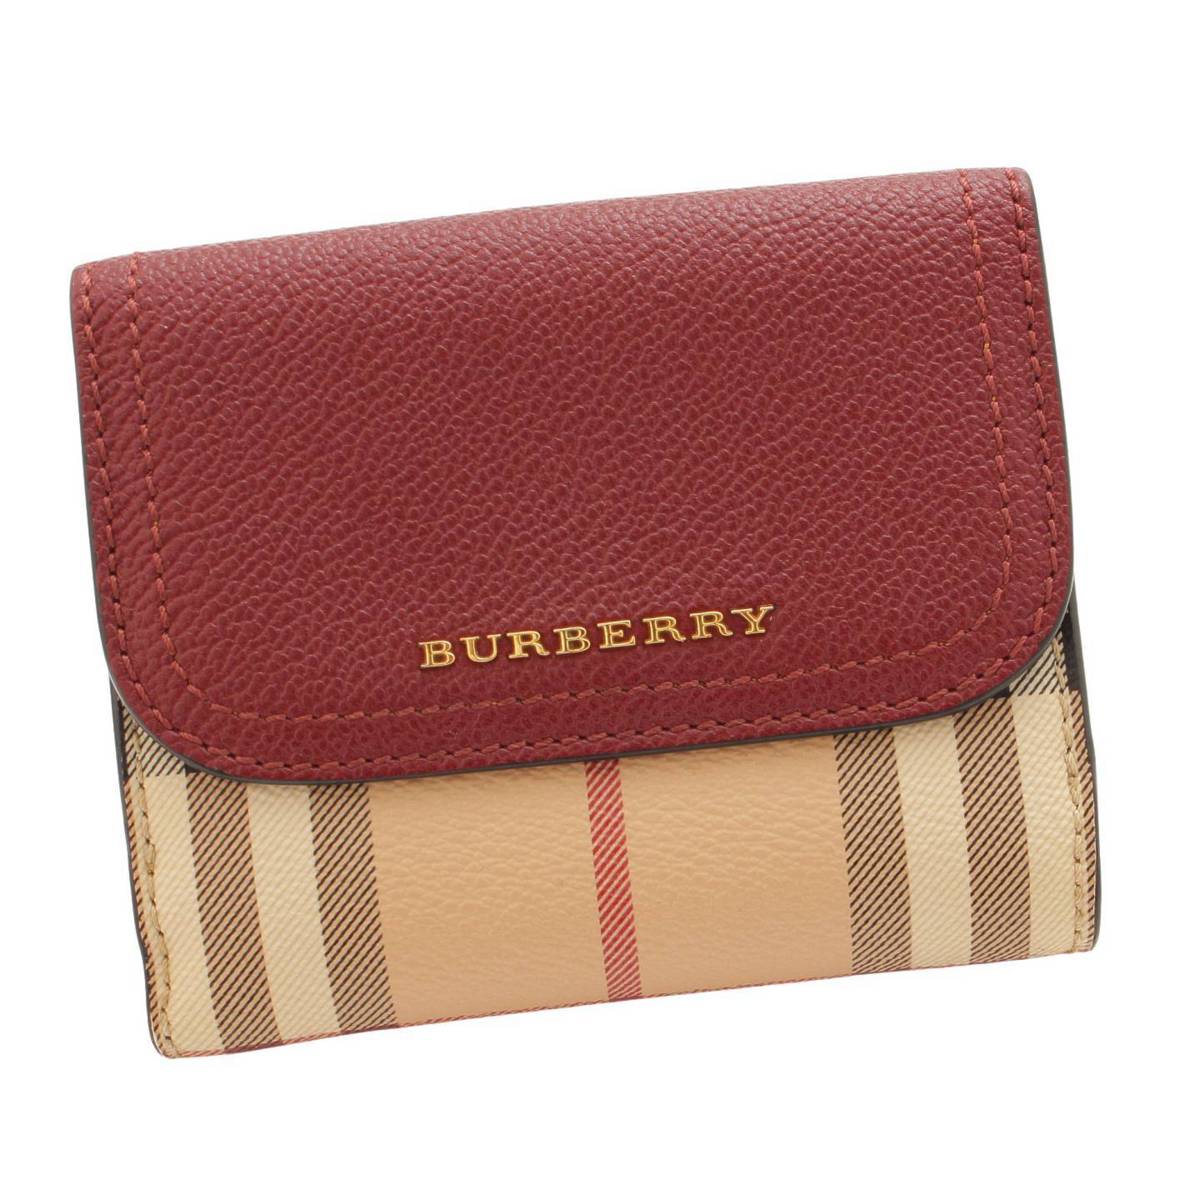 バーバリー(Burberry) Wホック 二つ折り財布 チェック柄 PVC レザー ピンクルージュ ベージュ